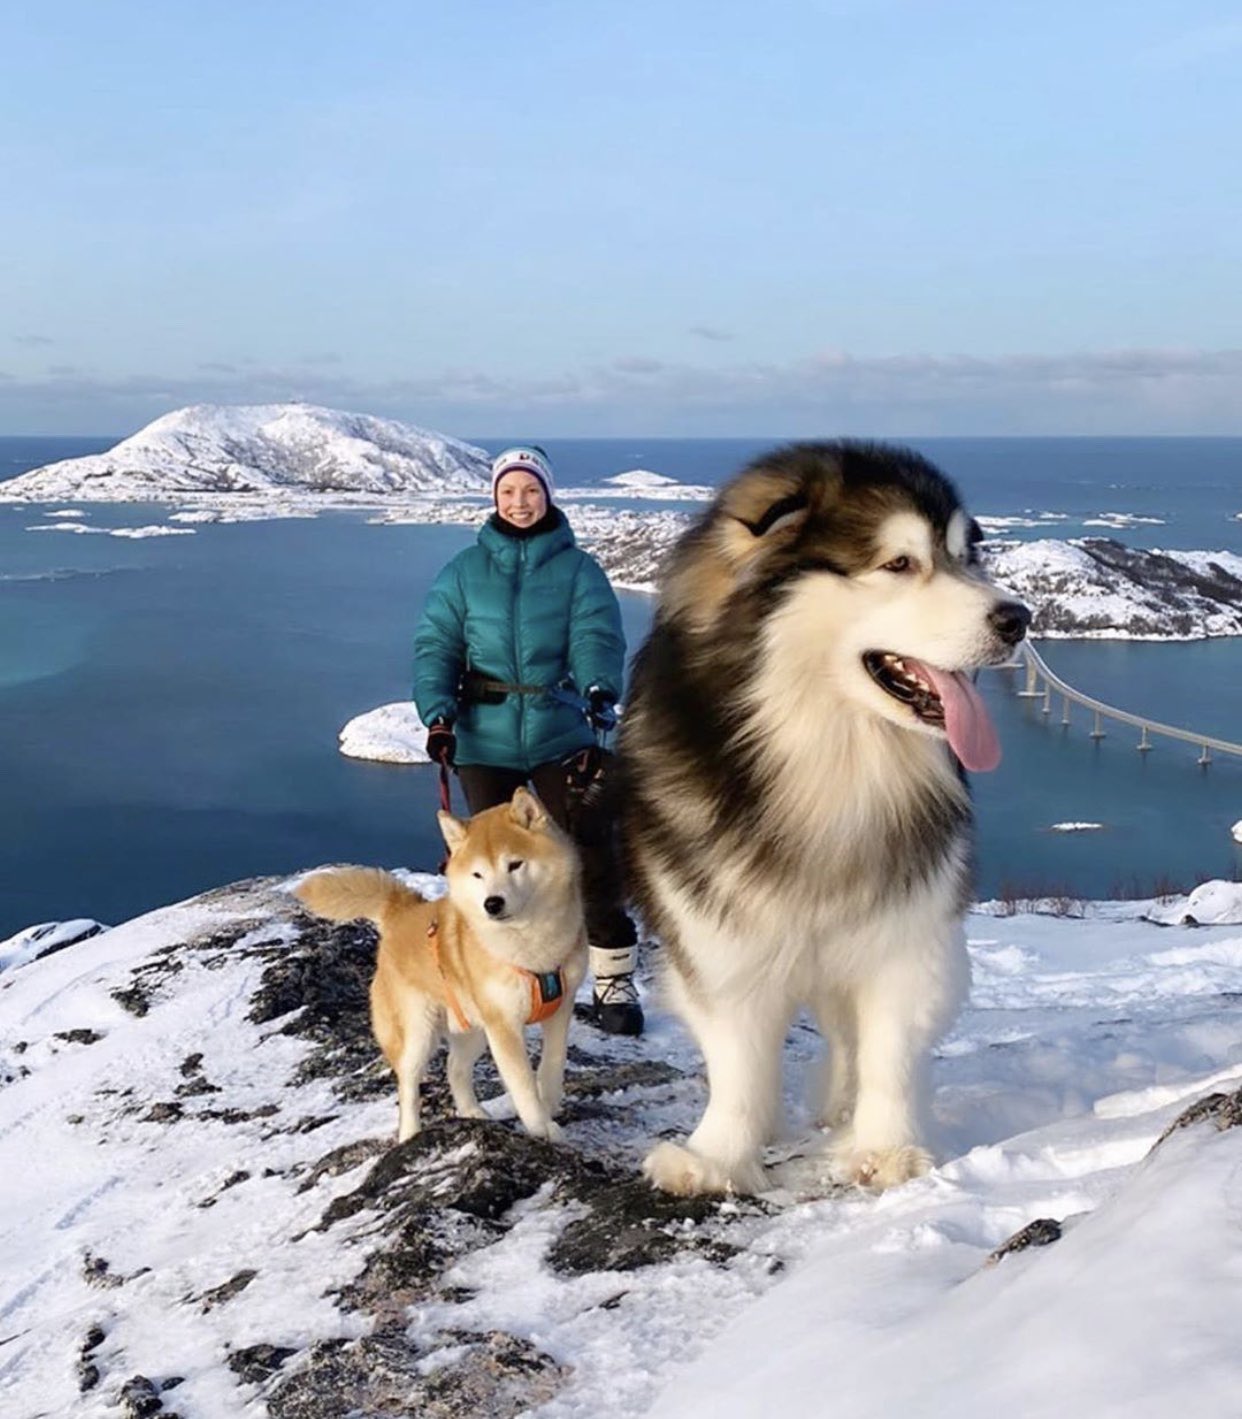 川上未映子 Mieko Kawakami 犬画像を見てて またまたあ と思ってたらアラスカンマラミュートという犬種だった すごい大きさ 子どもなら背中に乗って通学はもちろん旅できるレベル かわいい T Co Rkirhexhdj Twitter